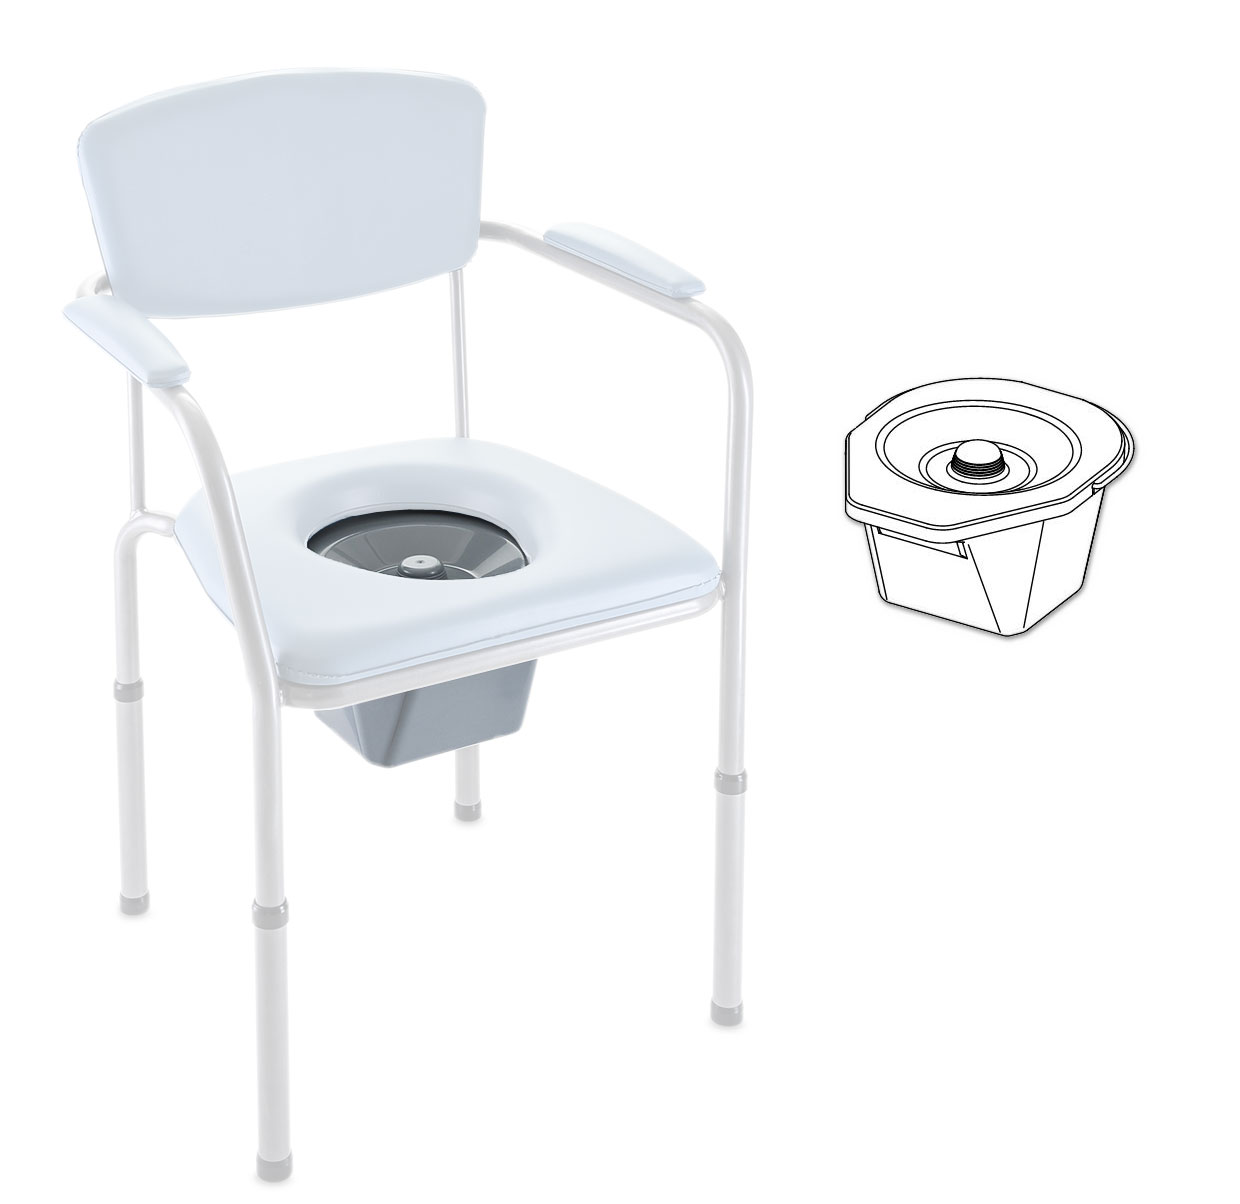 Toilettentopf + Deckel Invacare H450 / H450LA / H440